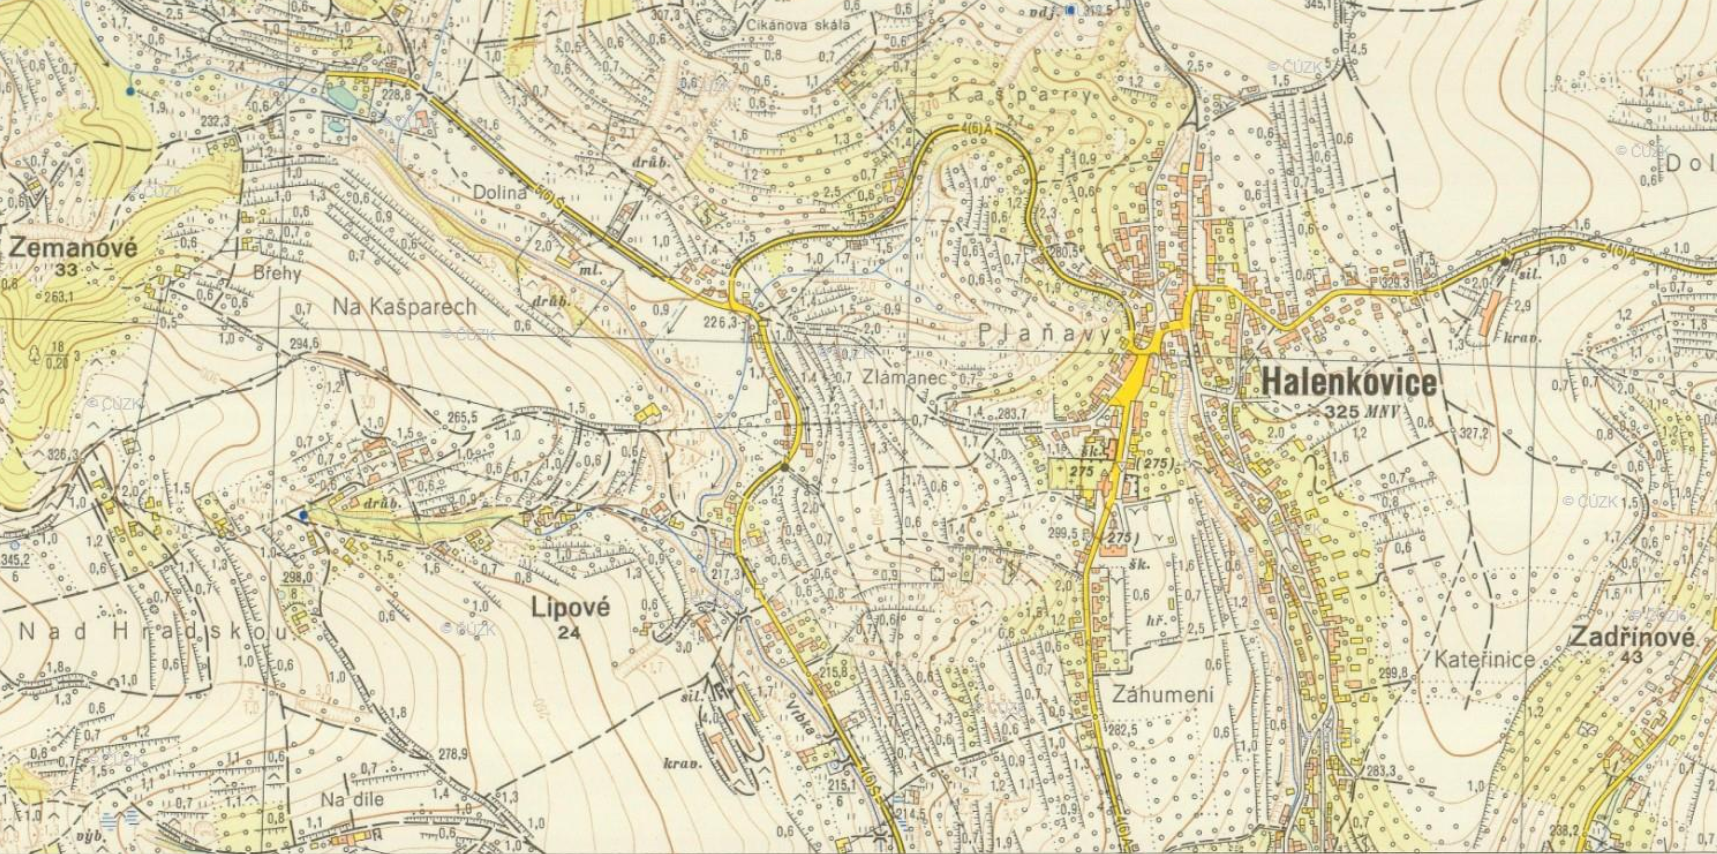 Topografická mapa Halenkovic v systému S-1952, měřítko 1:10 000 (zdroj: https://archivnimapy.cuzk.cz/uazk/topos52/topos52_data/010k/M_33_107_B_d_4_index.html).